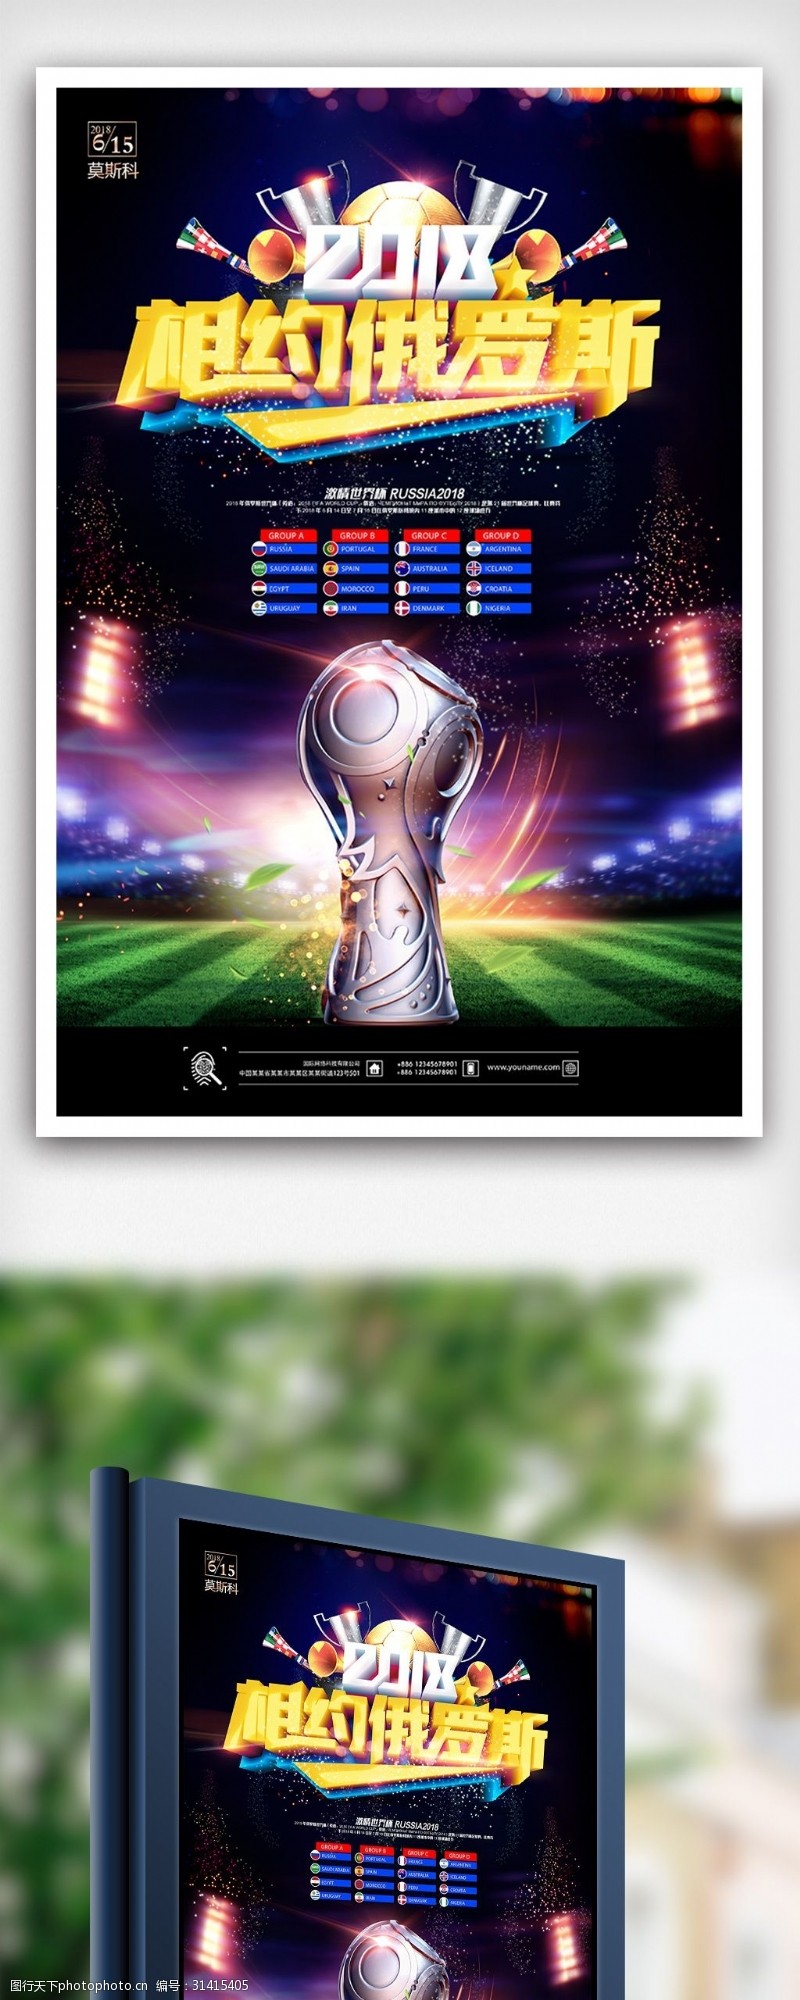 淘宝海报免费下载2018俄罗斯世界杯足球赛海报